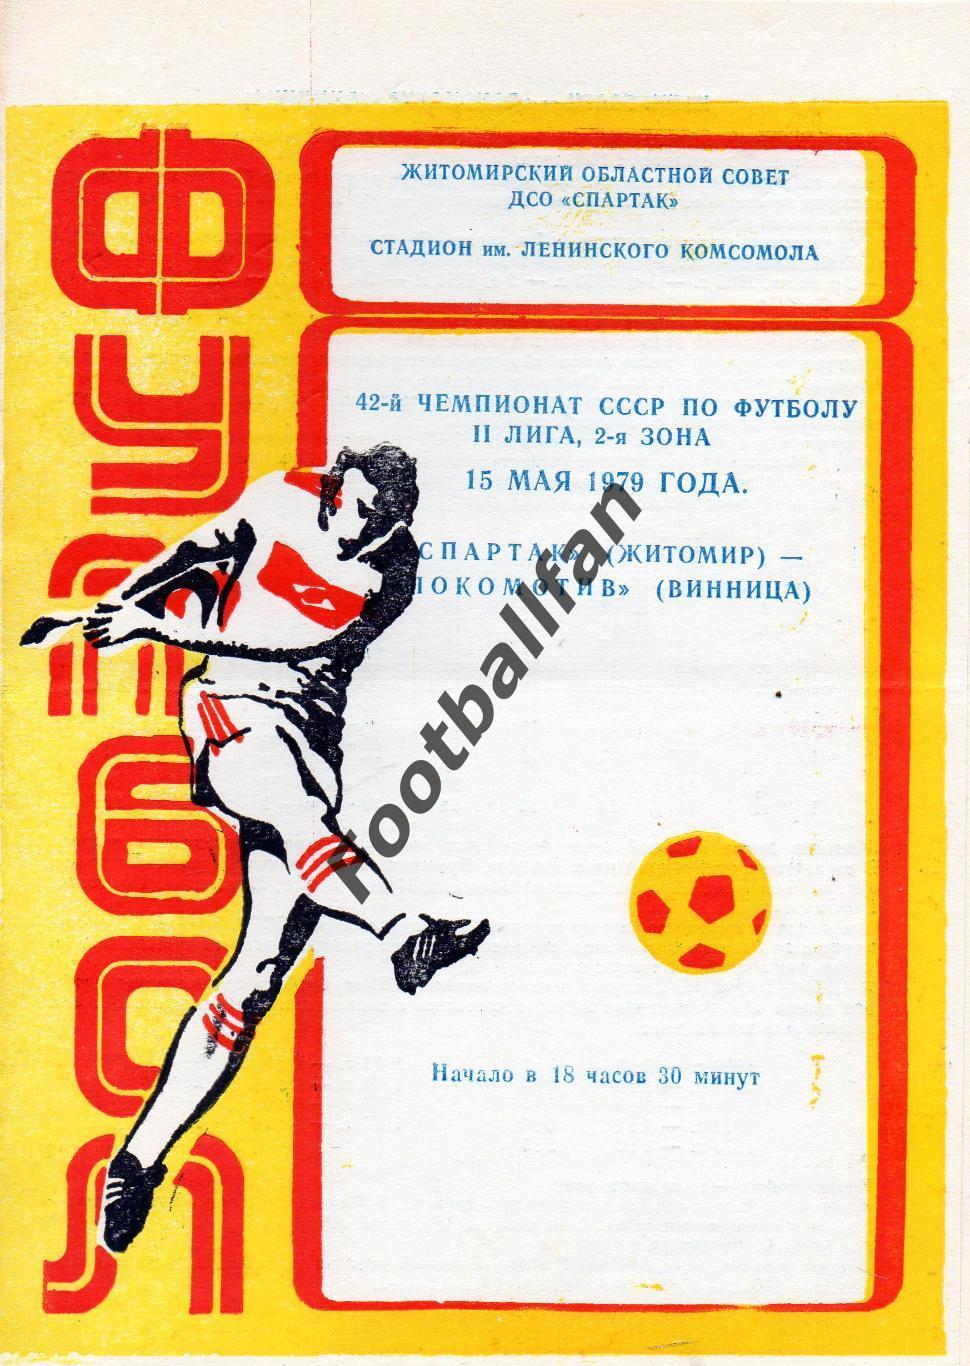 Спартак Житомир - Локомотив Винница 15.05.1979